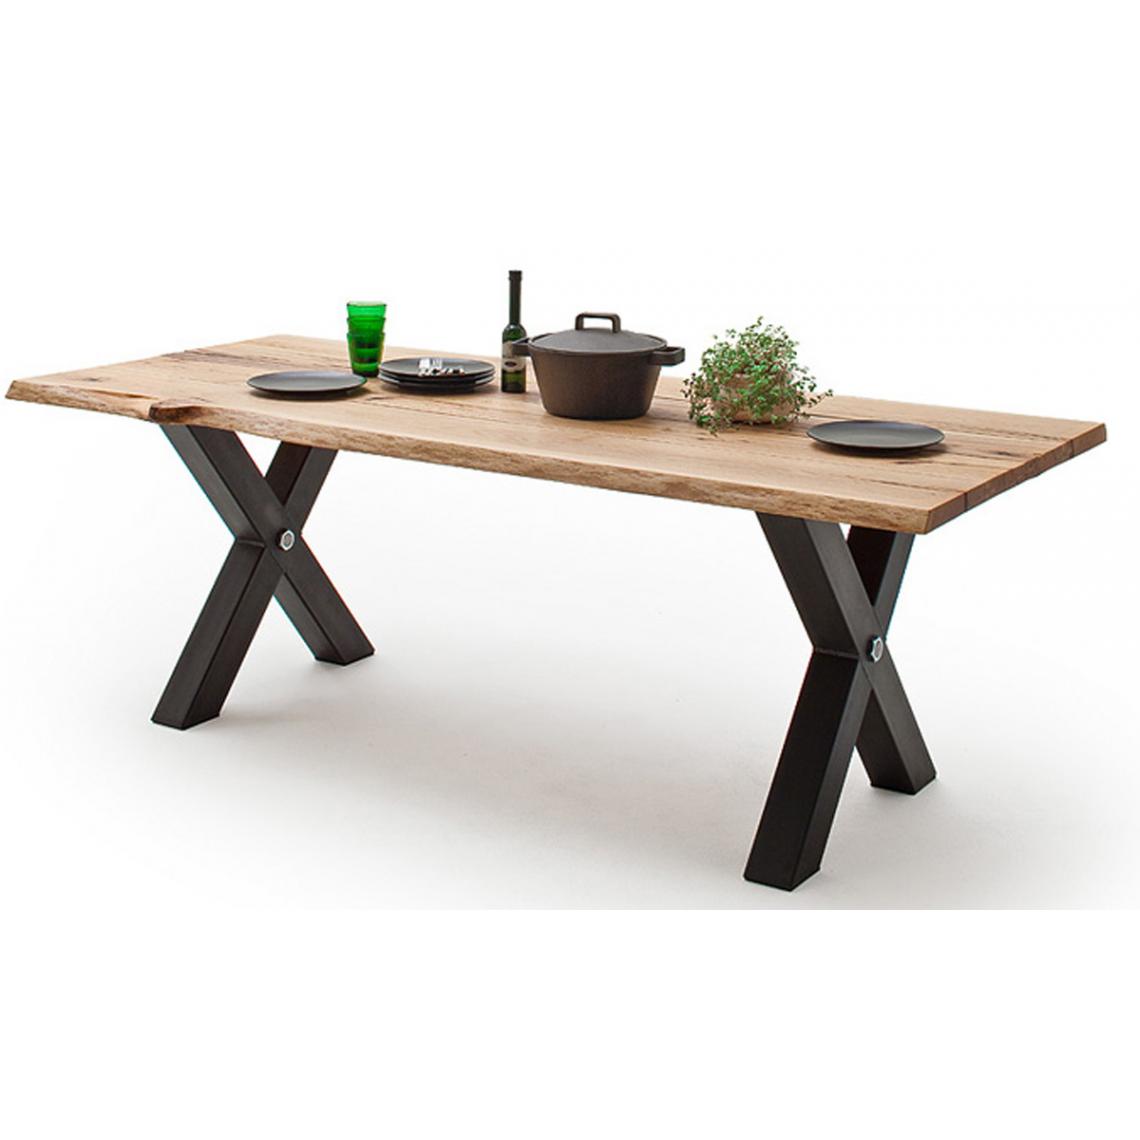 Pegane - Table à manger en bois massif coloris chêne sauvage et anthracite - L.180 x H.77 x P.100 cm - Tables à manger